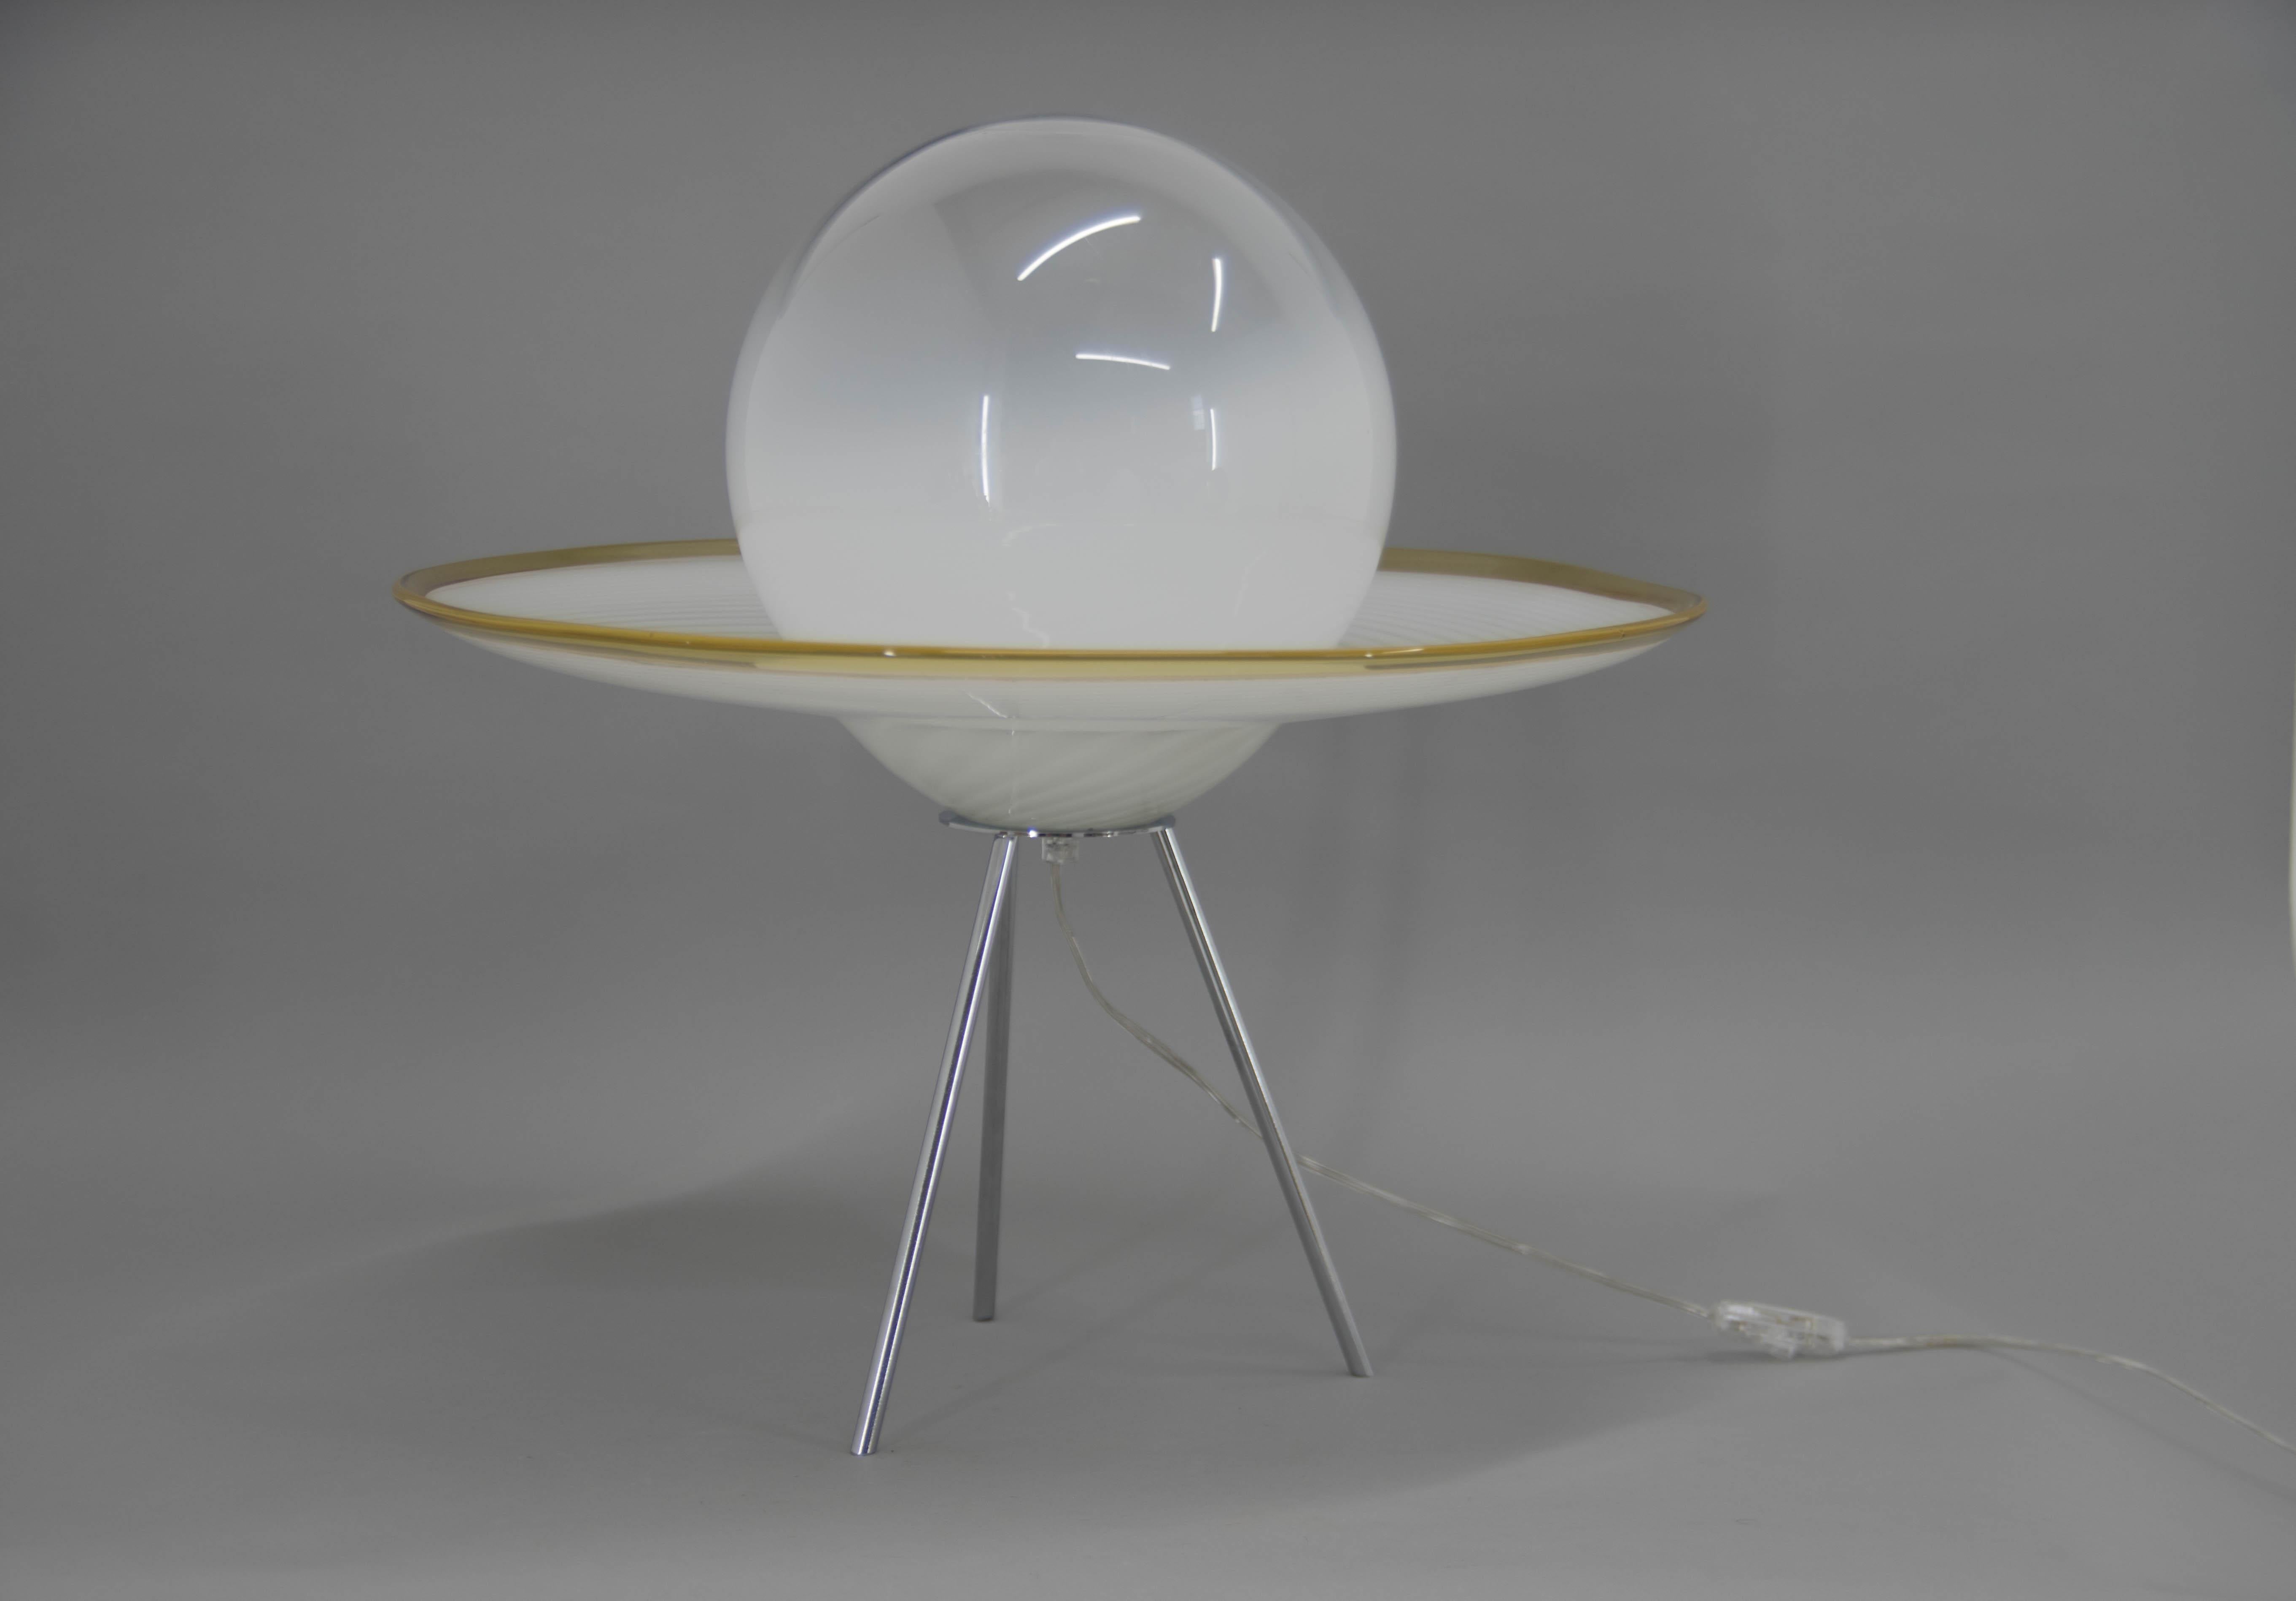 Moderne Tisch- oder Stehlampe aus Murano im italienischen Stil in Form eines Saturns.
Sehr guter Originalzustand.
1x60W, E25-E27 Glühbirne
Inklusive US-Steckeradapter.